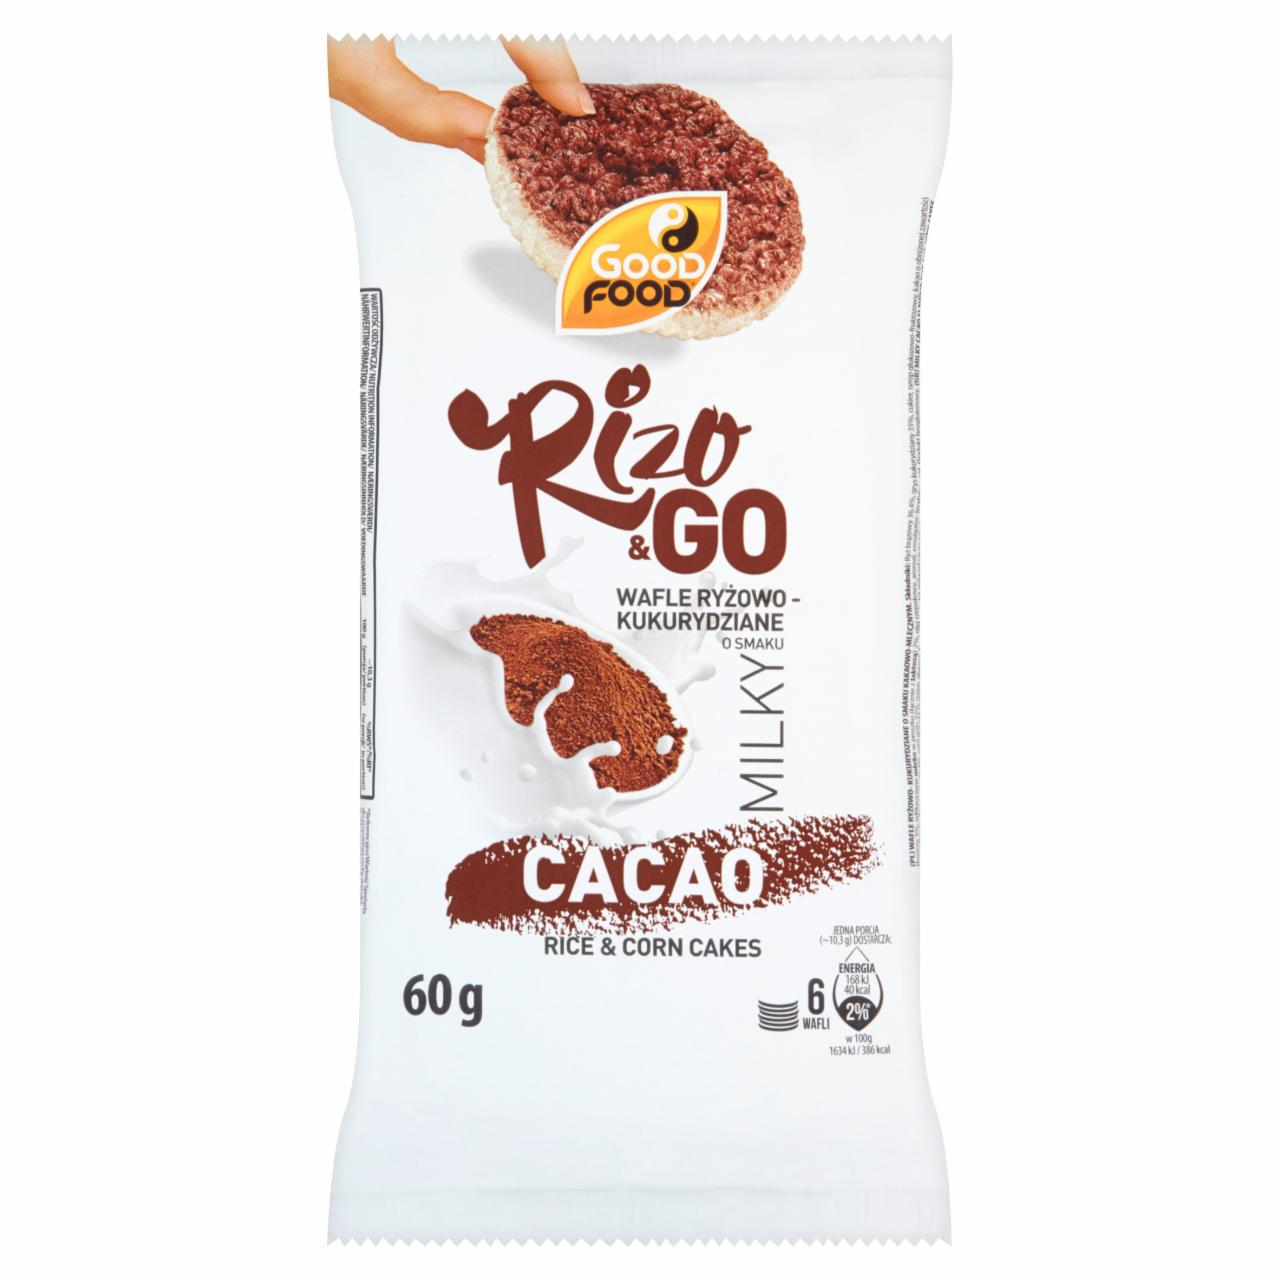 Zdjęcia - Good Food Rizo & Go Wafle ryżowo-kukurydziane o smaku kakaowo-mlecznym 60 g (6 sztuk)